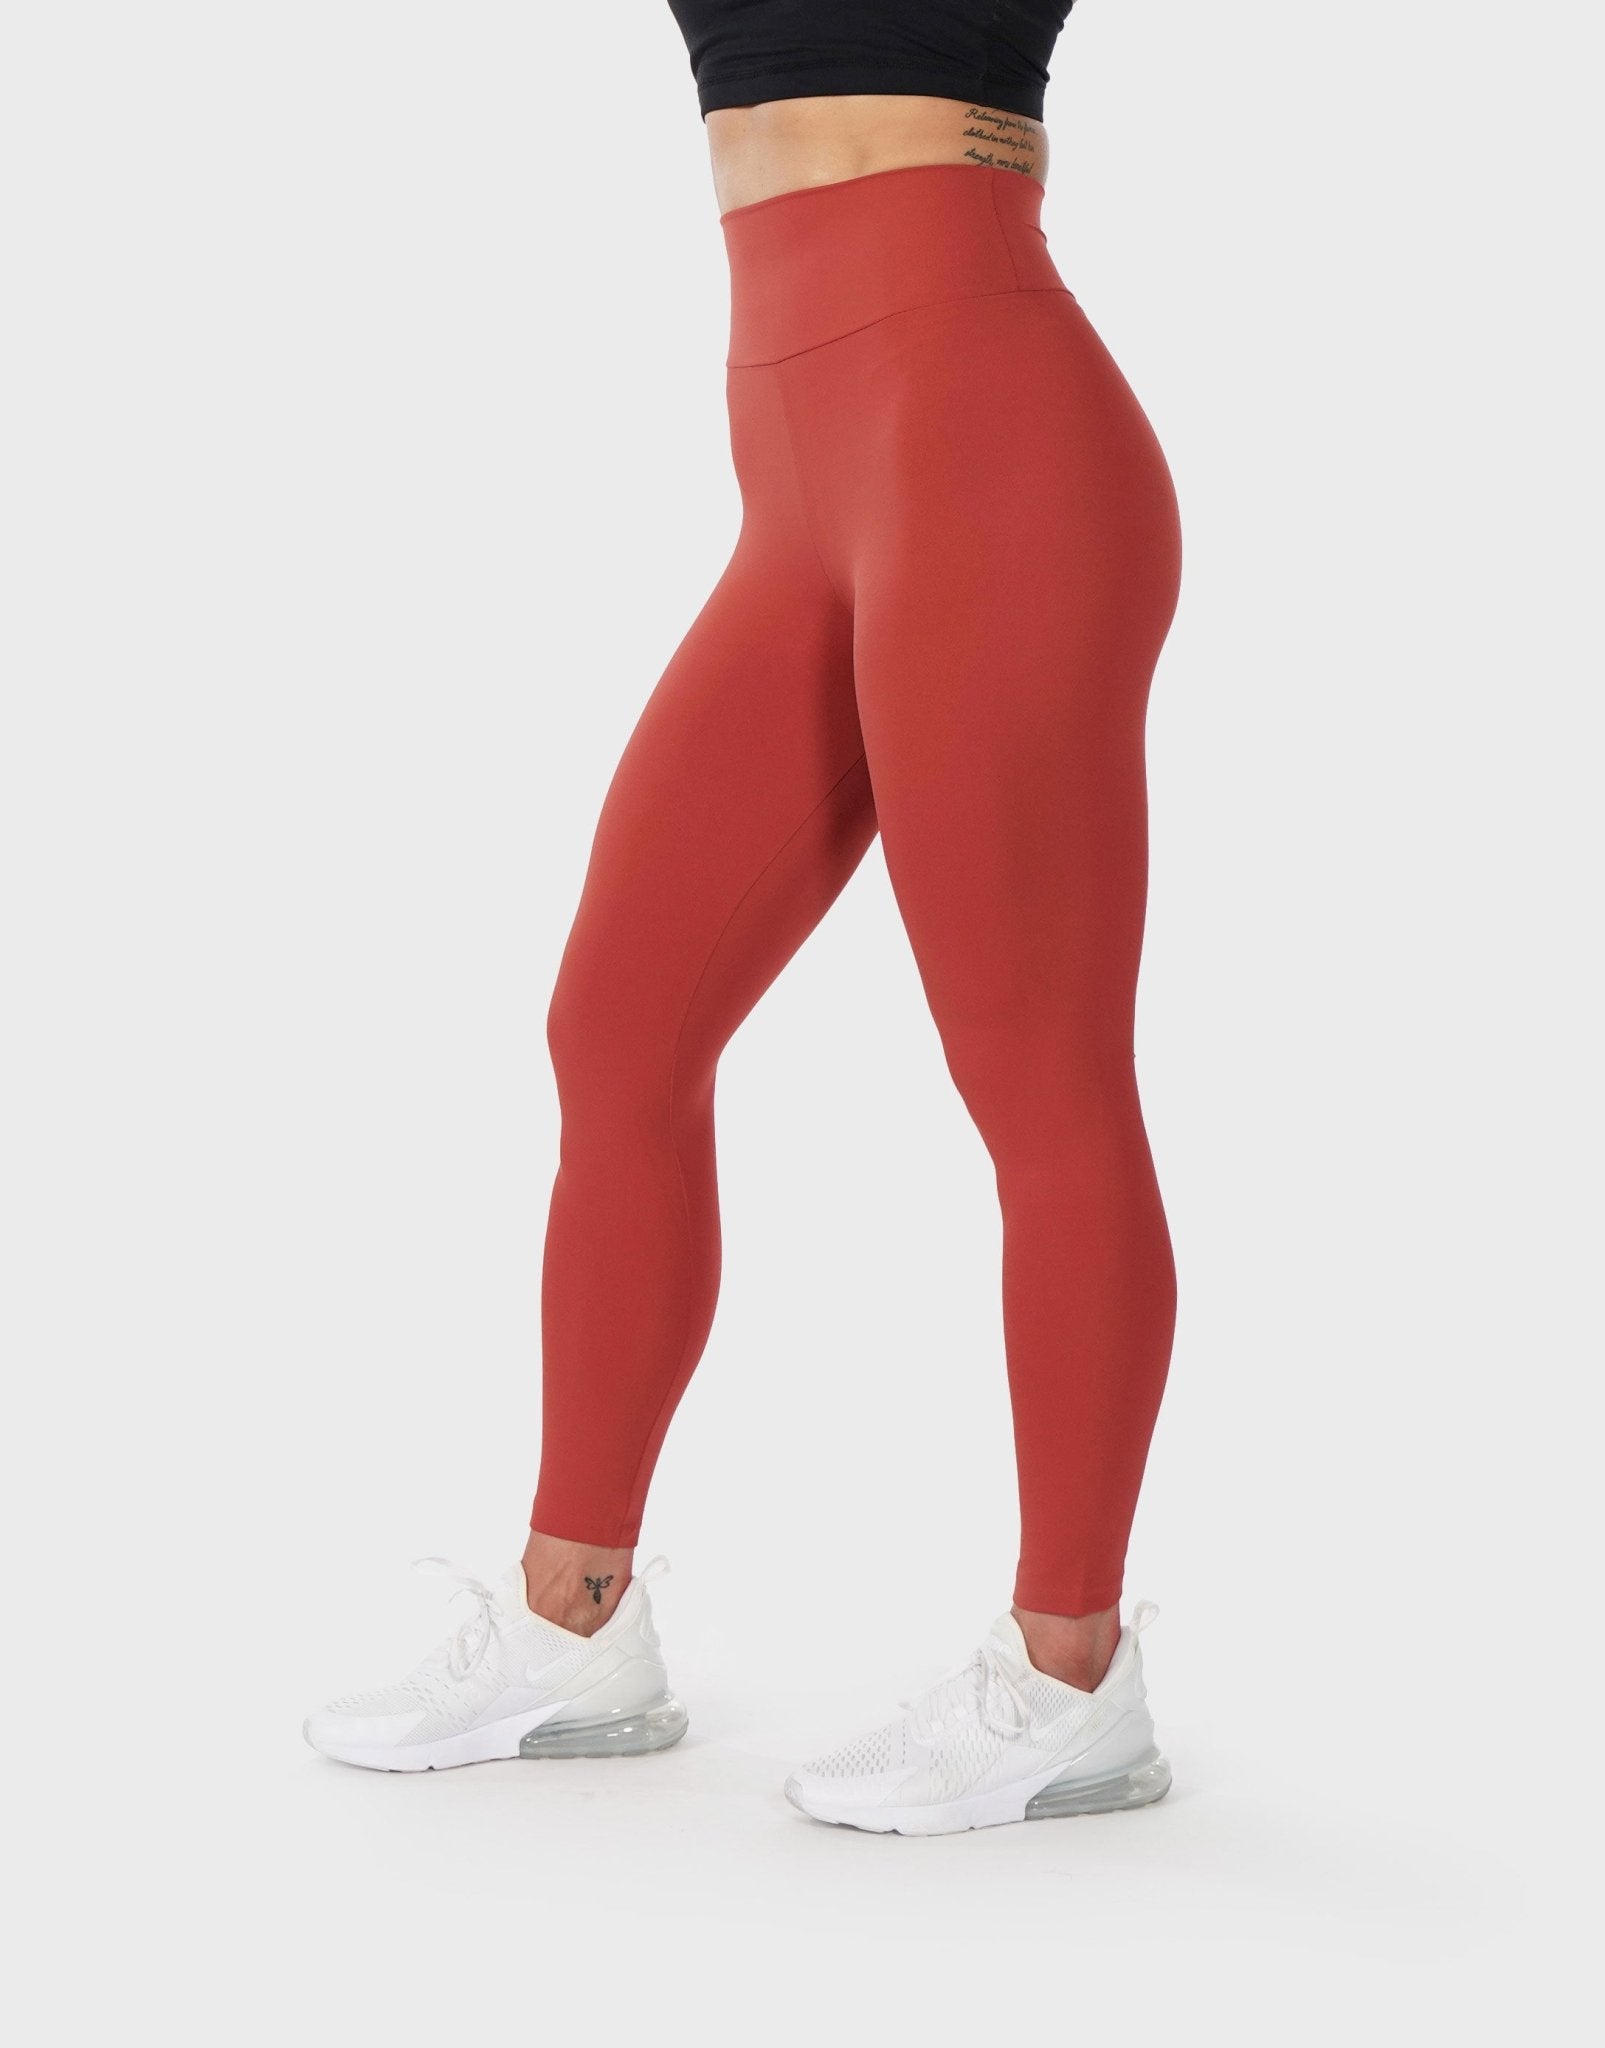 Pchee Bum, Pants & Jumpsuits, Newpchee Bum Red Scrunch Butt Leggings